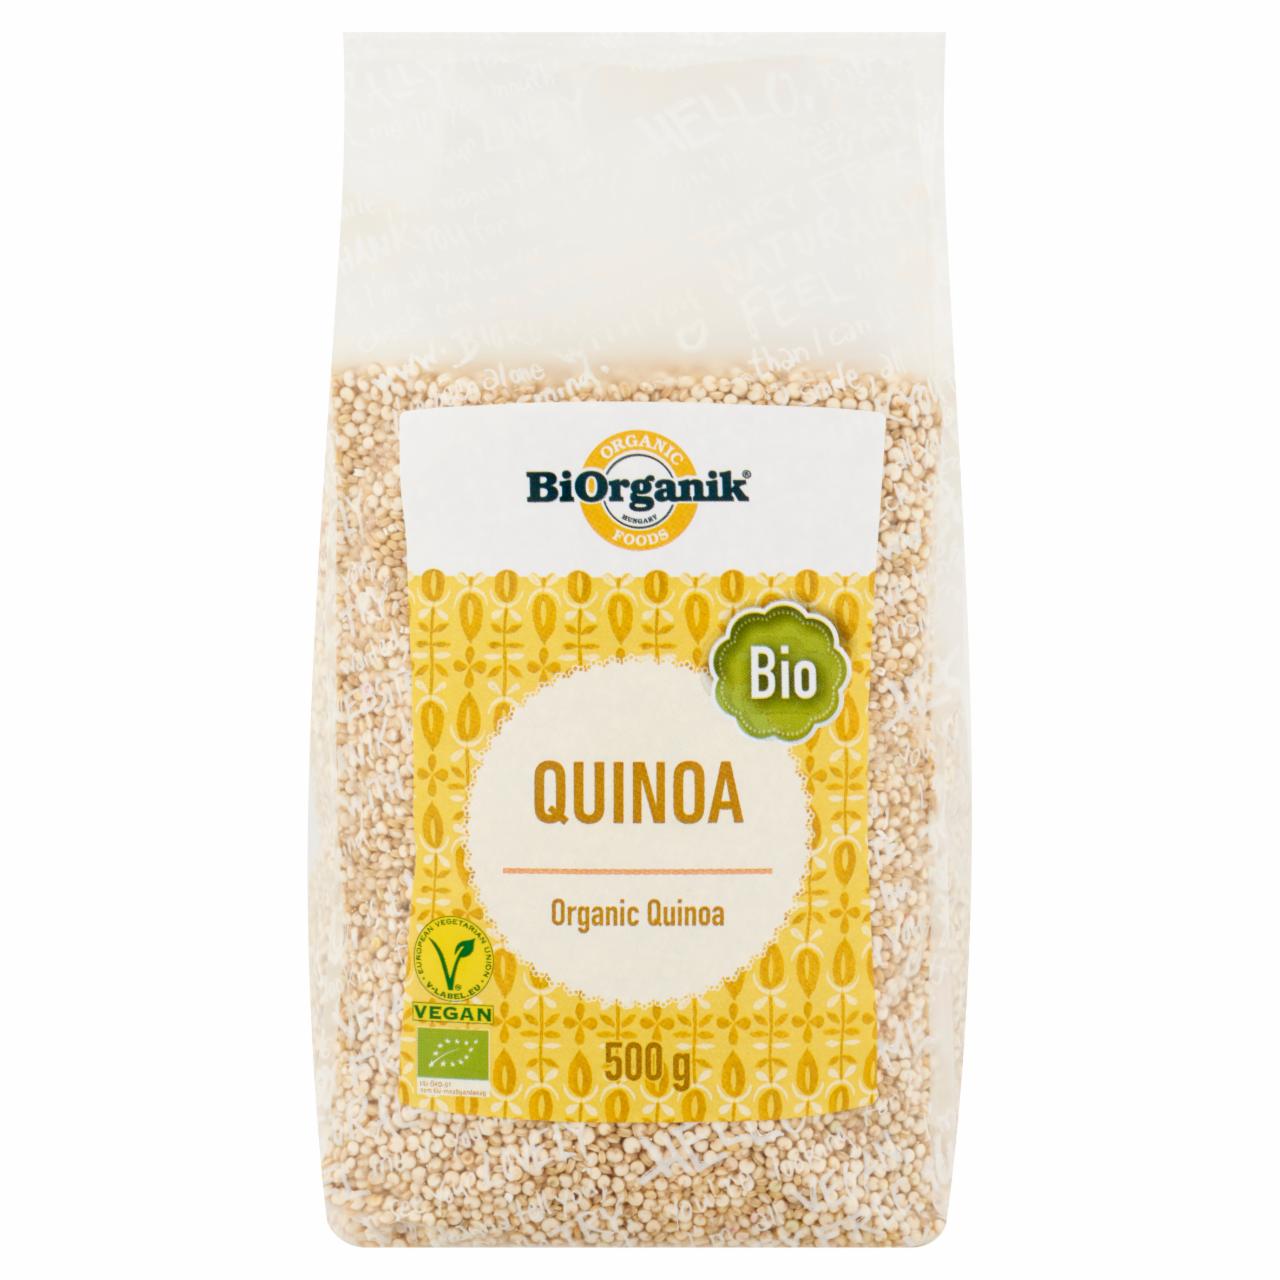 Képek - BiOrganik bio quinoa 500 g